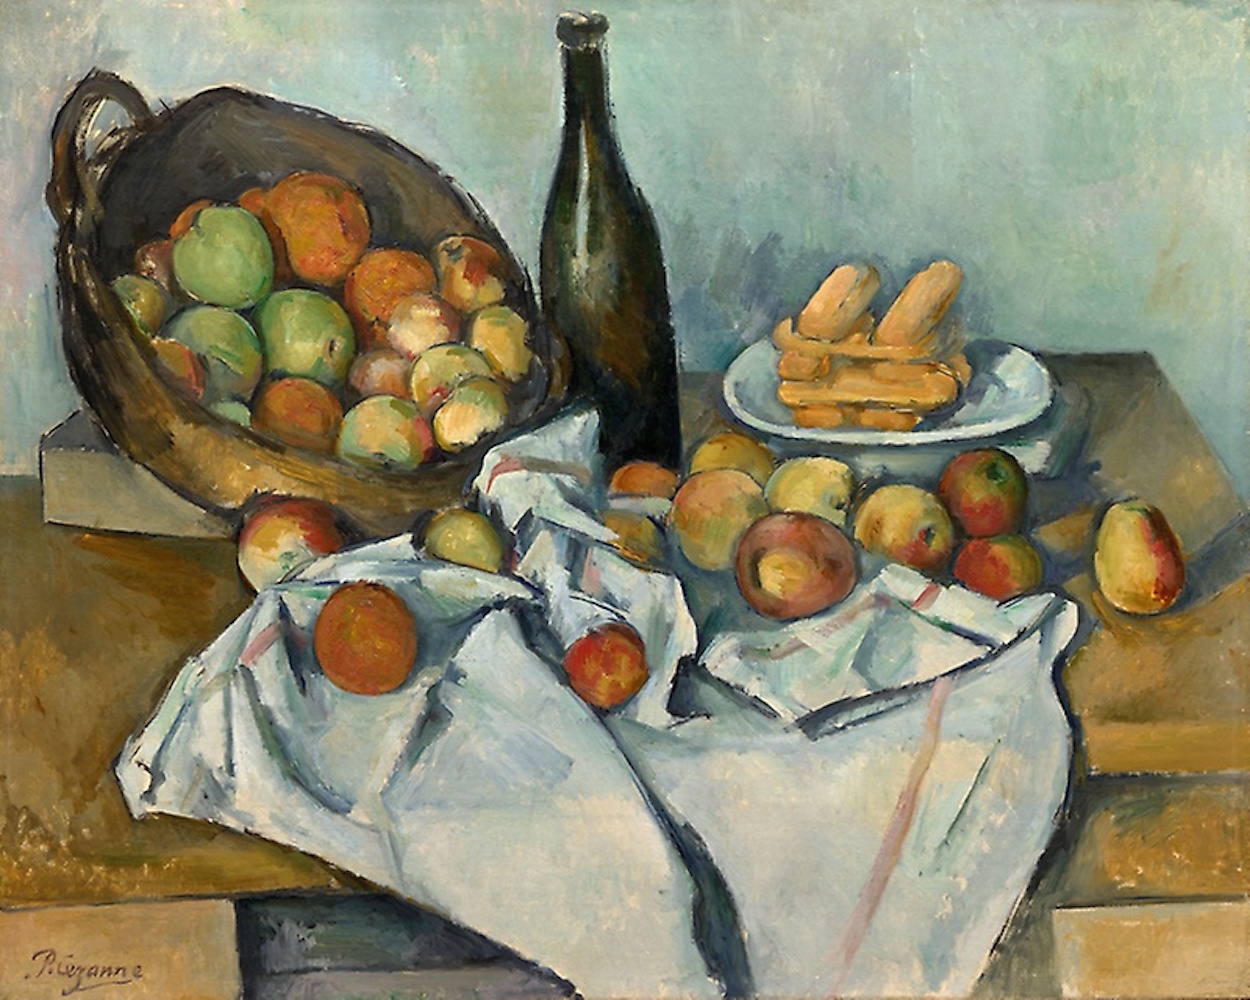 蘋果籃 by Paul Cézanne - c. 1893 - 65 x 80 cm 